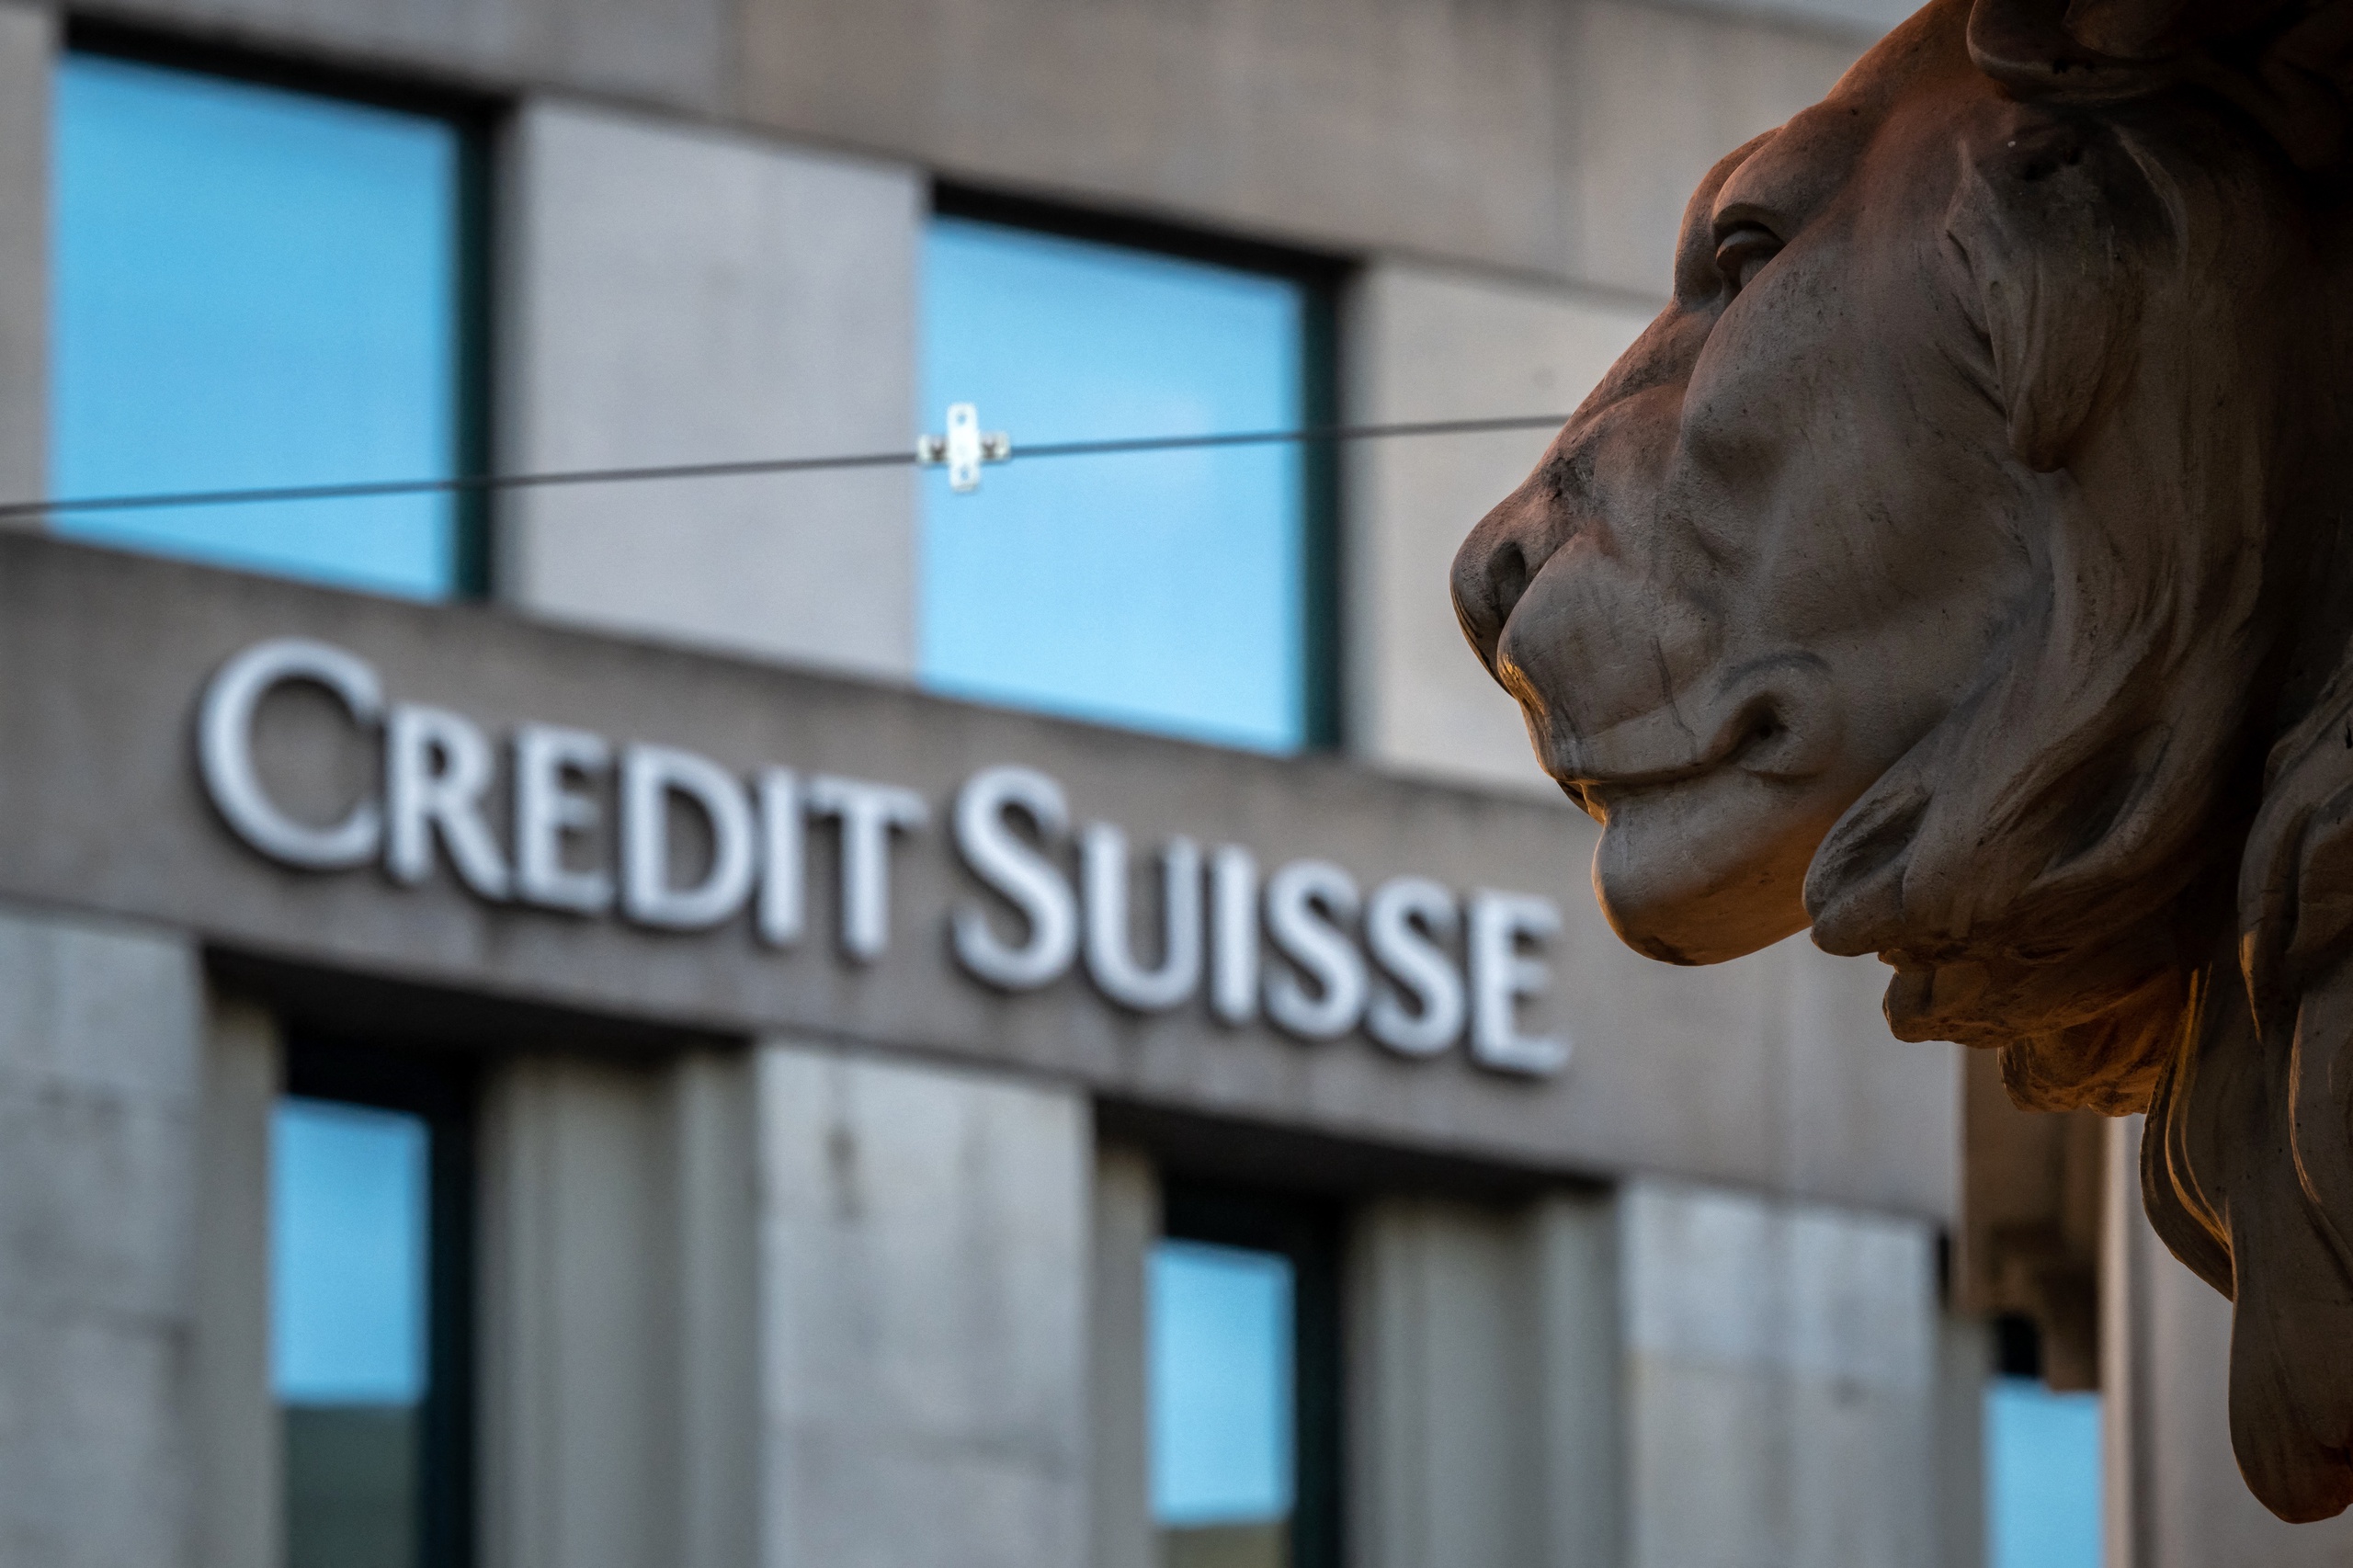 Credit Suisse is de op één na grootste kredietverstrekker van Zwitserland. 